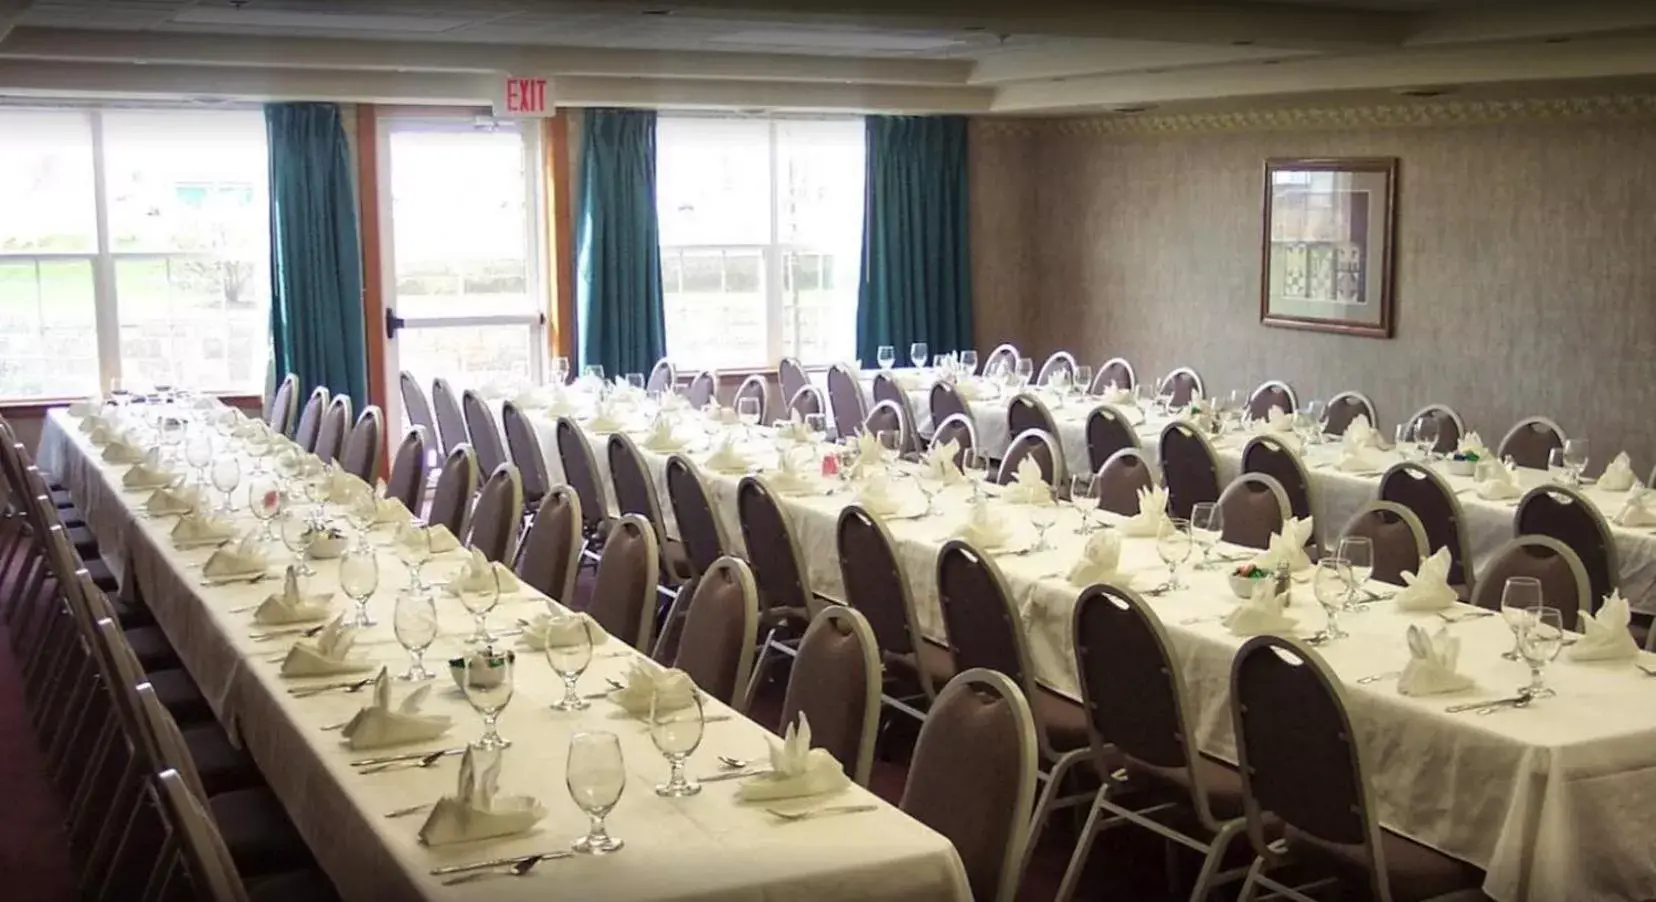 Meeting/conference room, Banquet Facilities in Van Buren Hotel